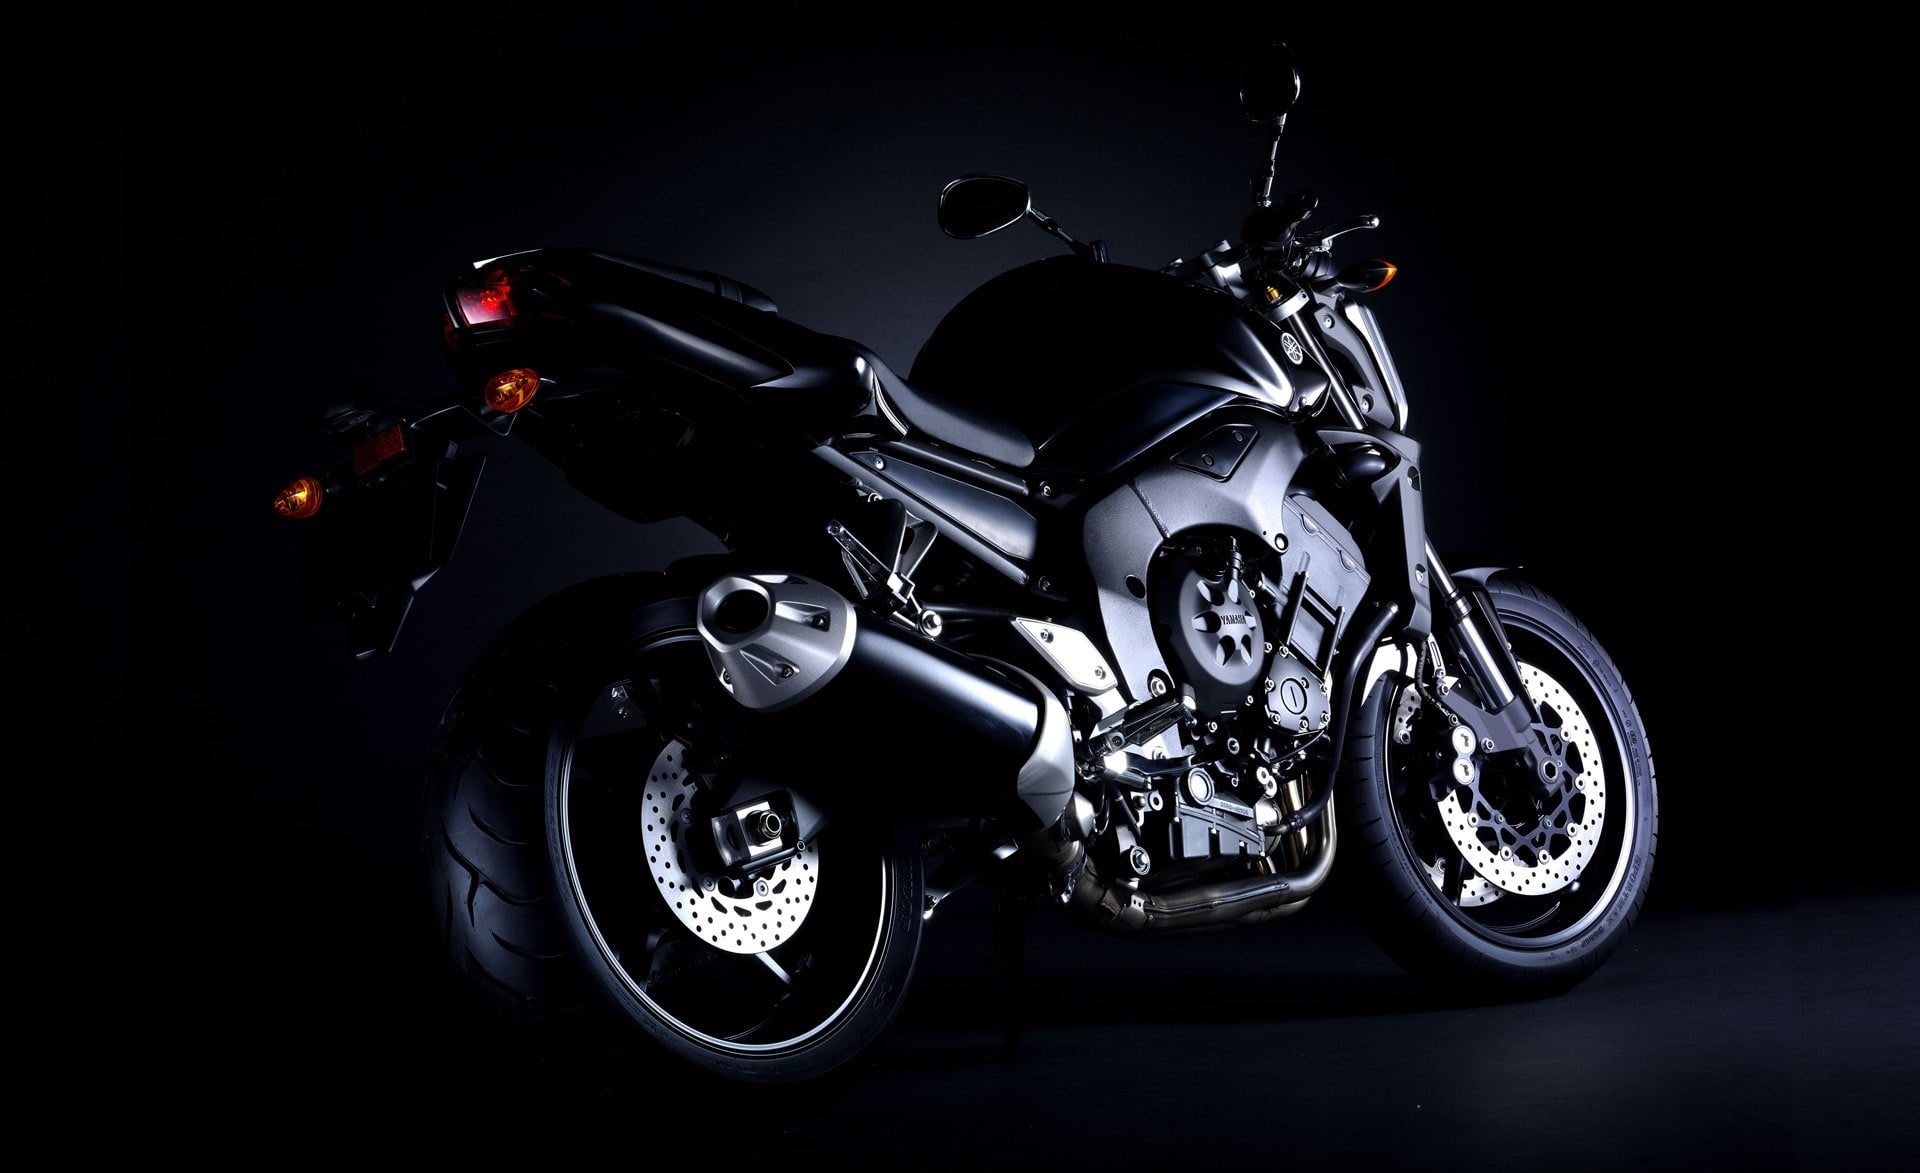 2006 Yamaha FZ1, black motocycle, Motorcycles, transportation